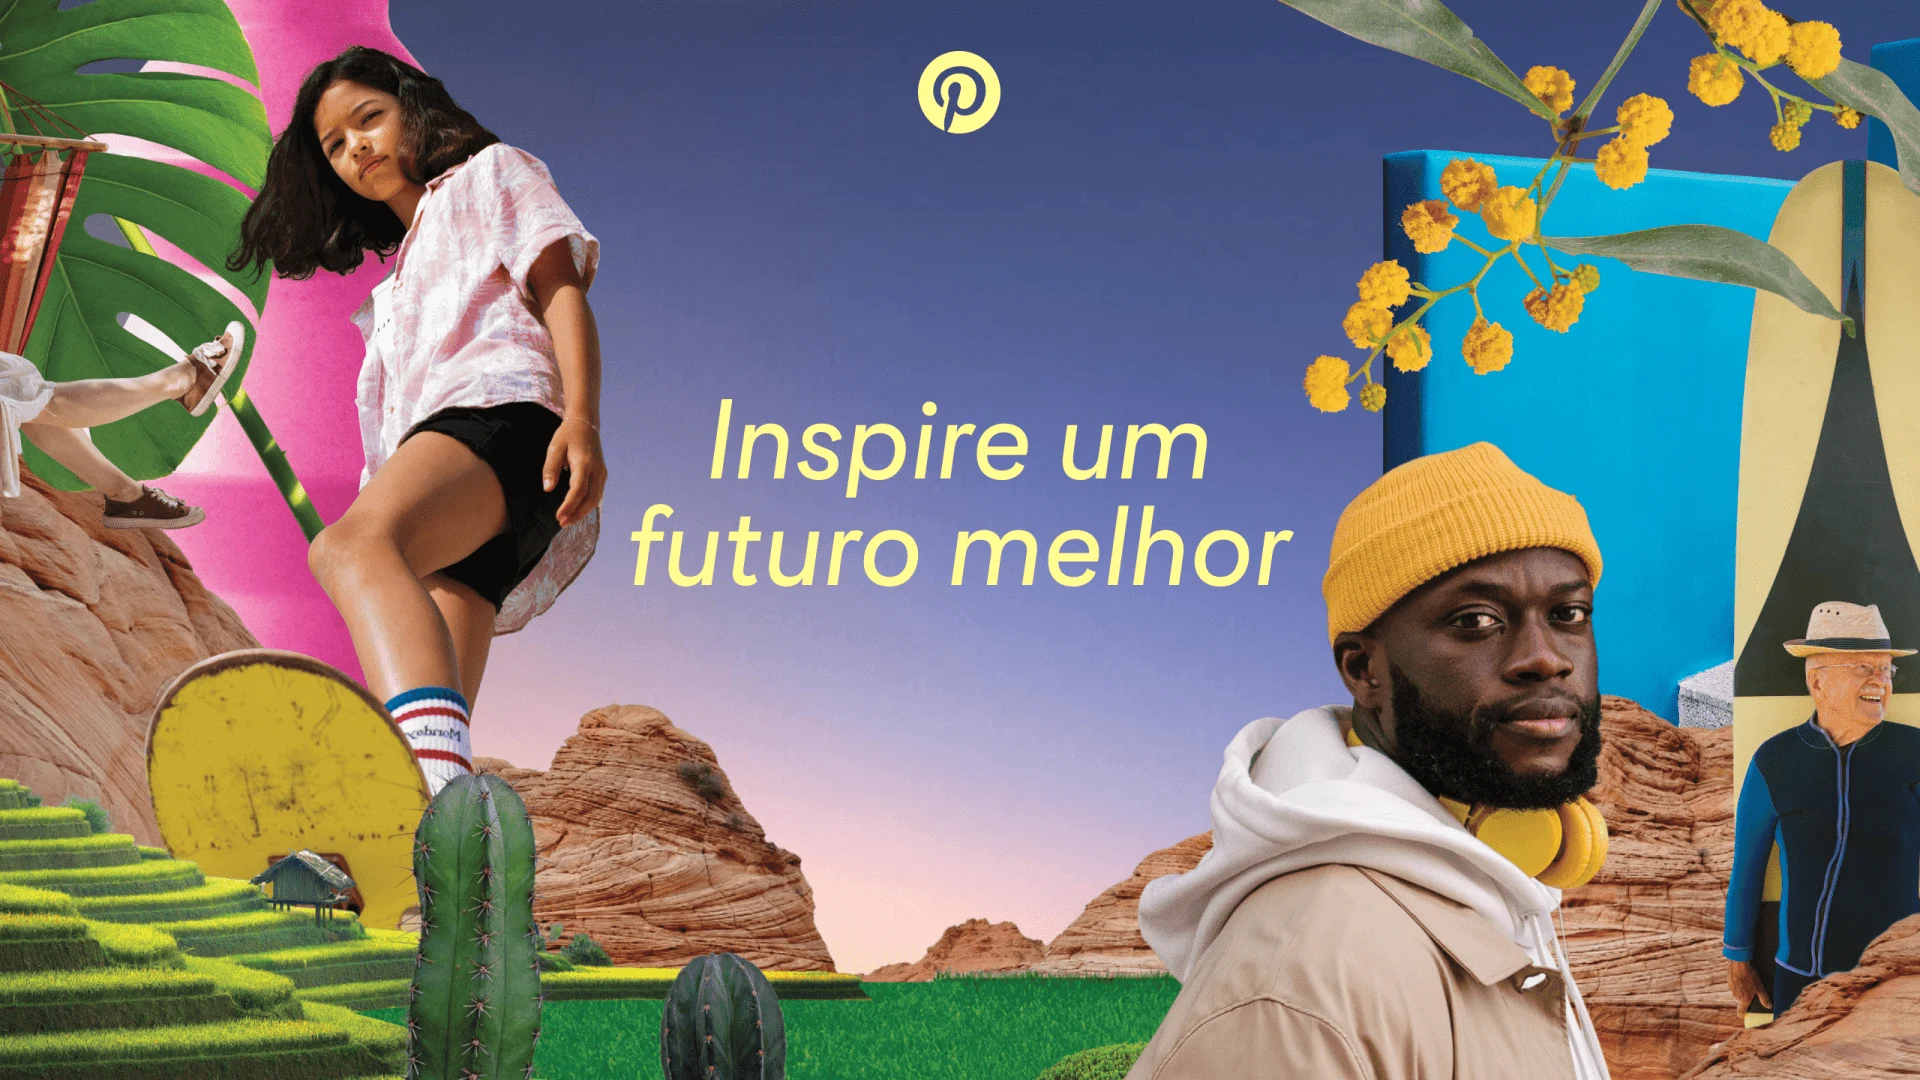 Uma colagem colorida de imagens inspiradas no Pinterest em volta da frase "Inspire um futuro melhor"